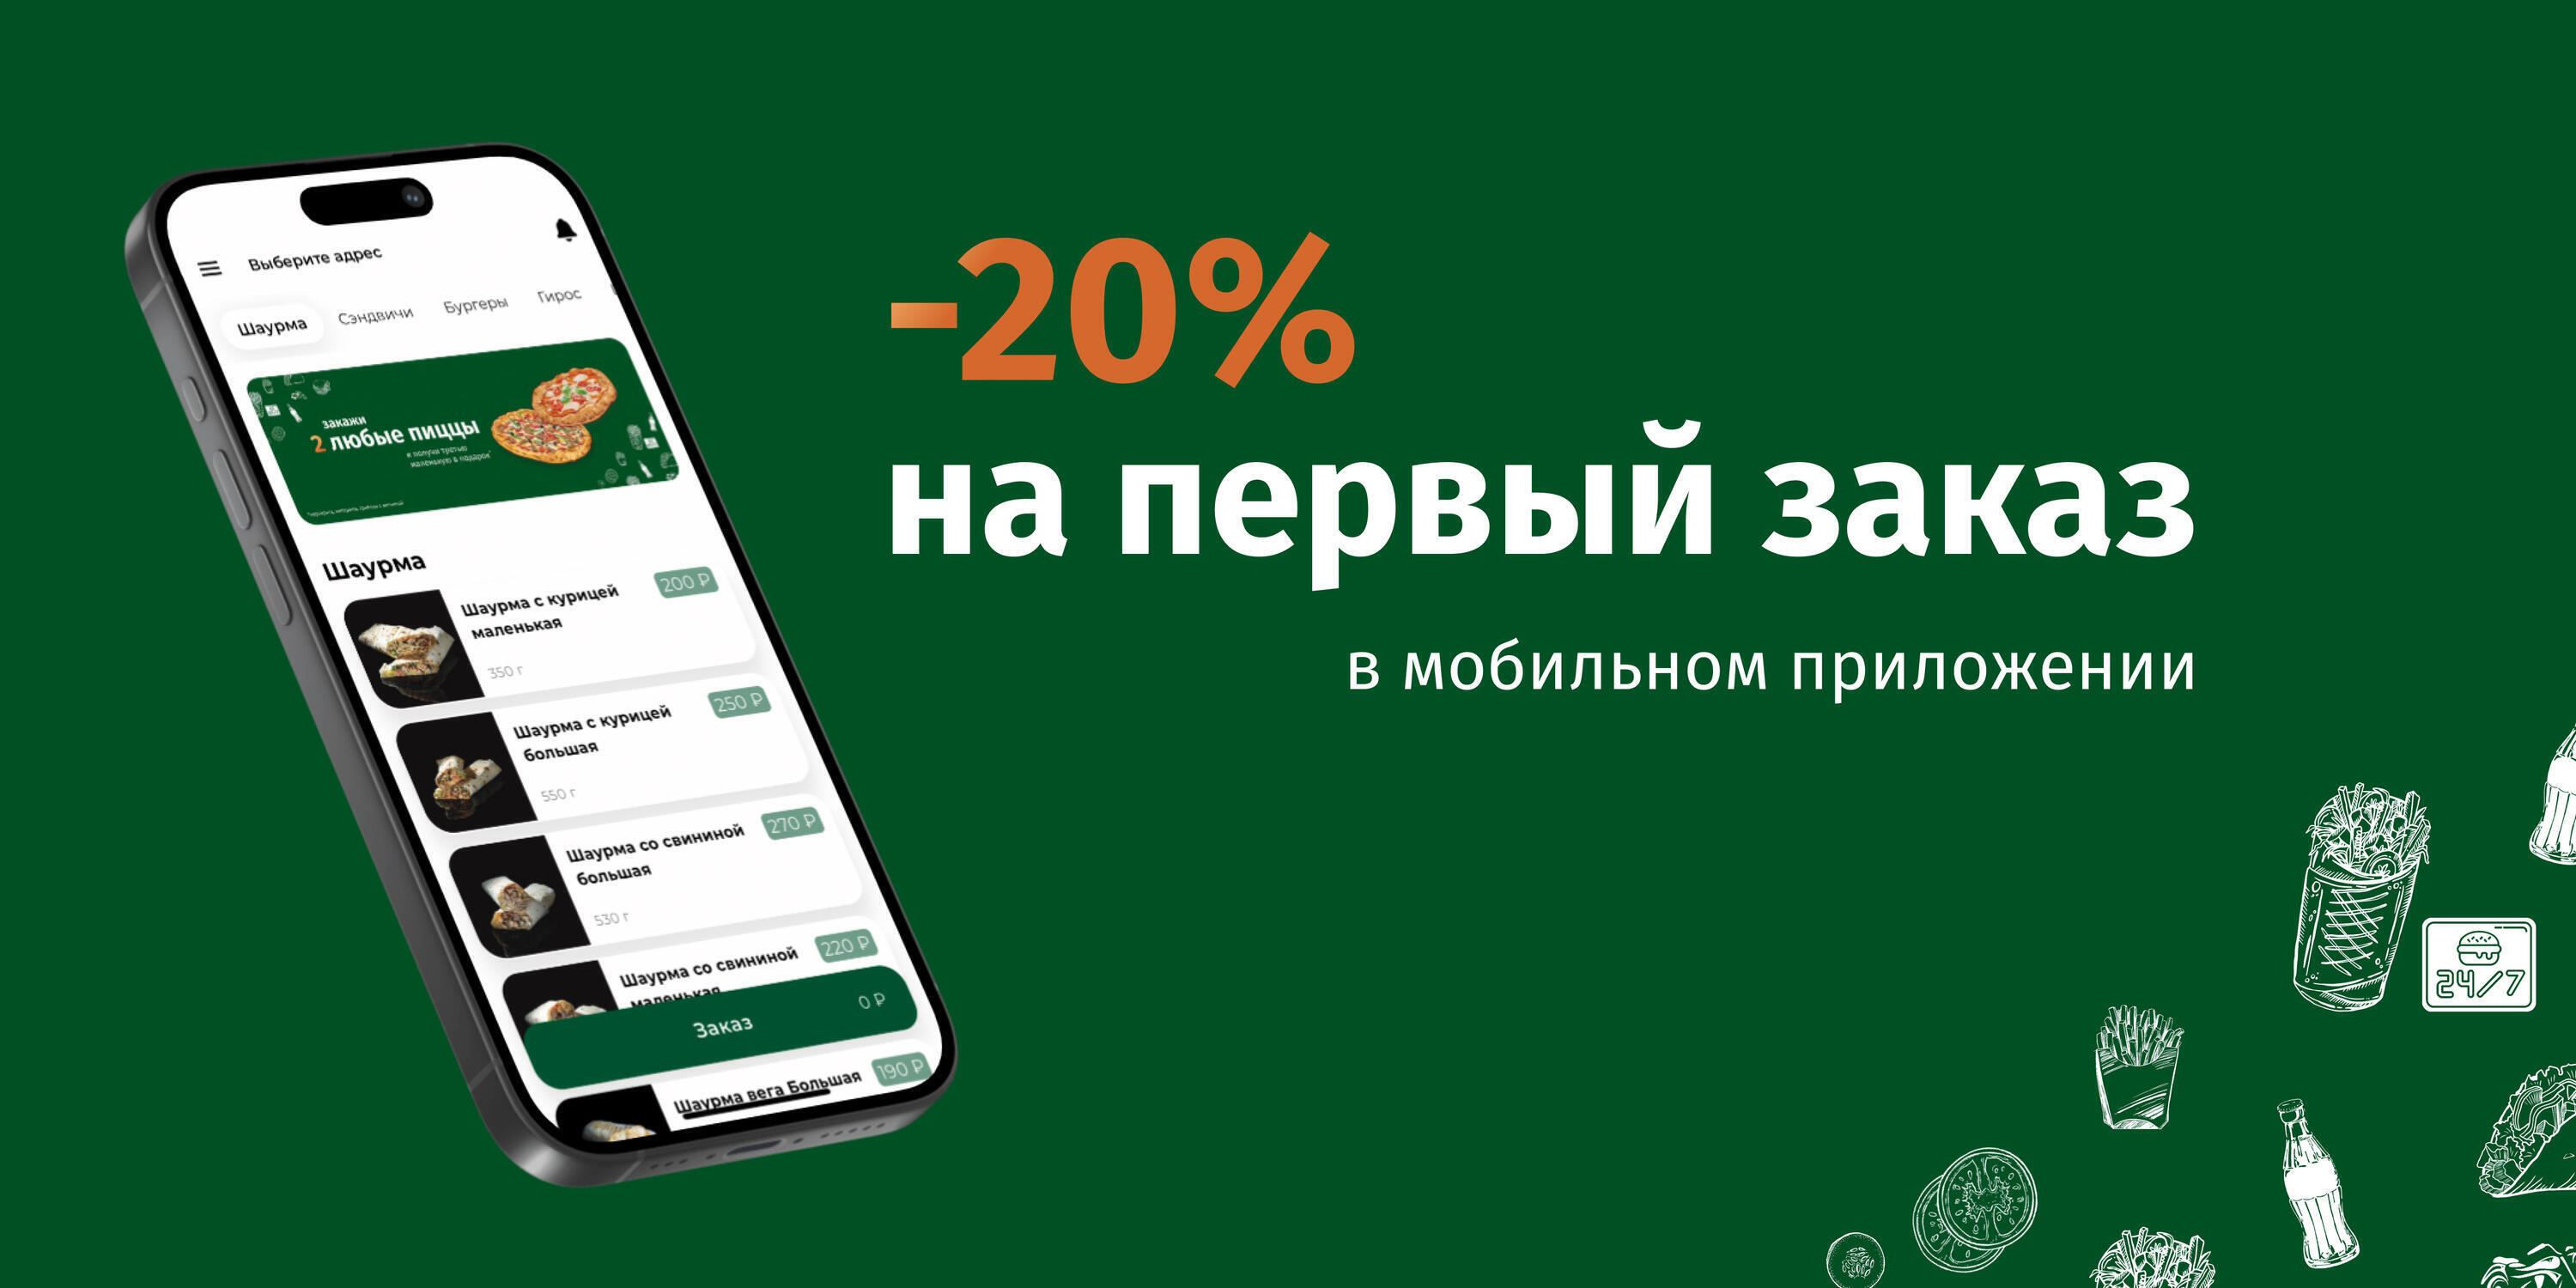 -20% на первый заказ в мобильном приложении